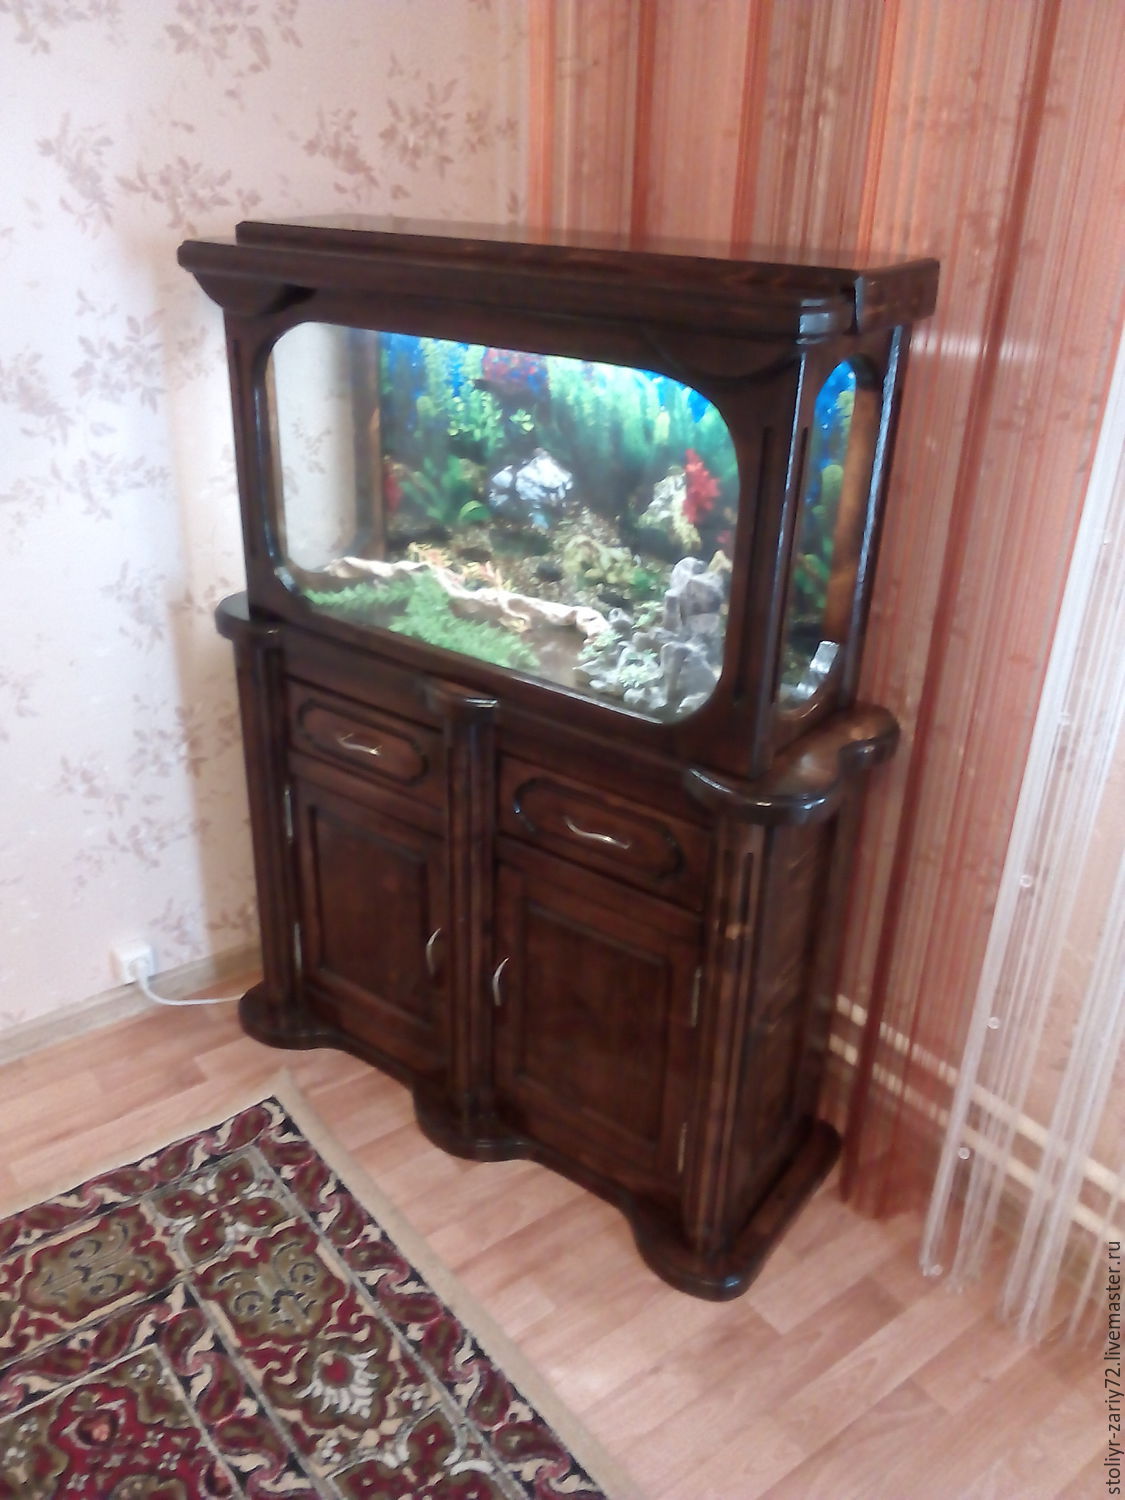 Тумбы под аквариумы купить в Москве - цена изготовления металлических тумб под аквариум на заказ